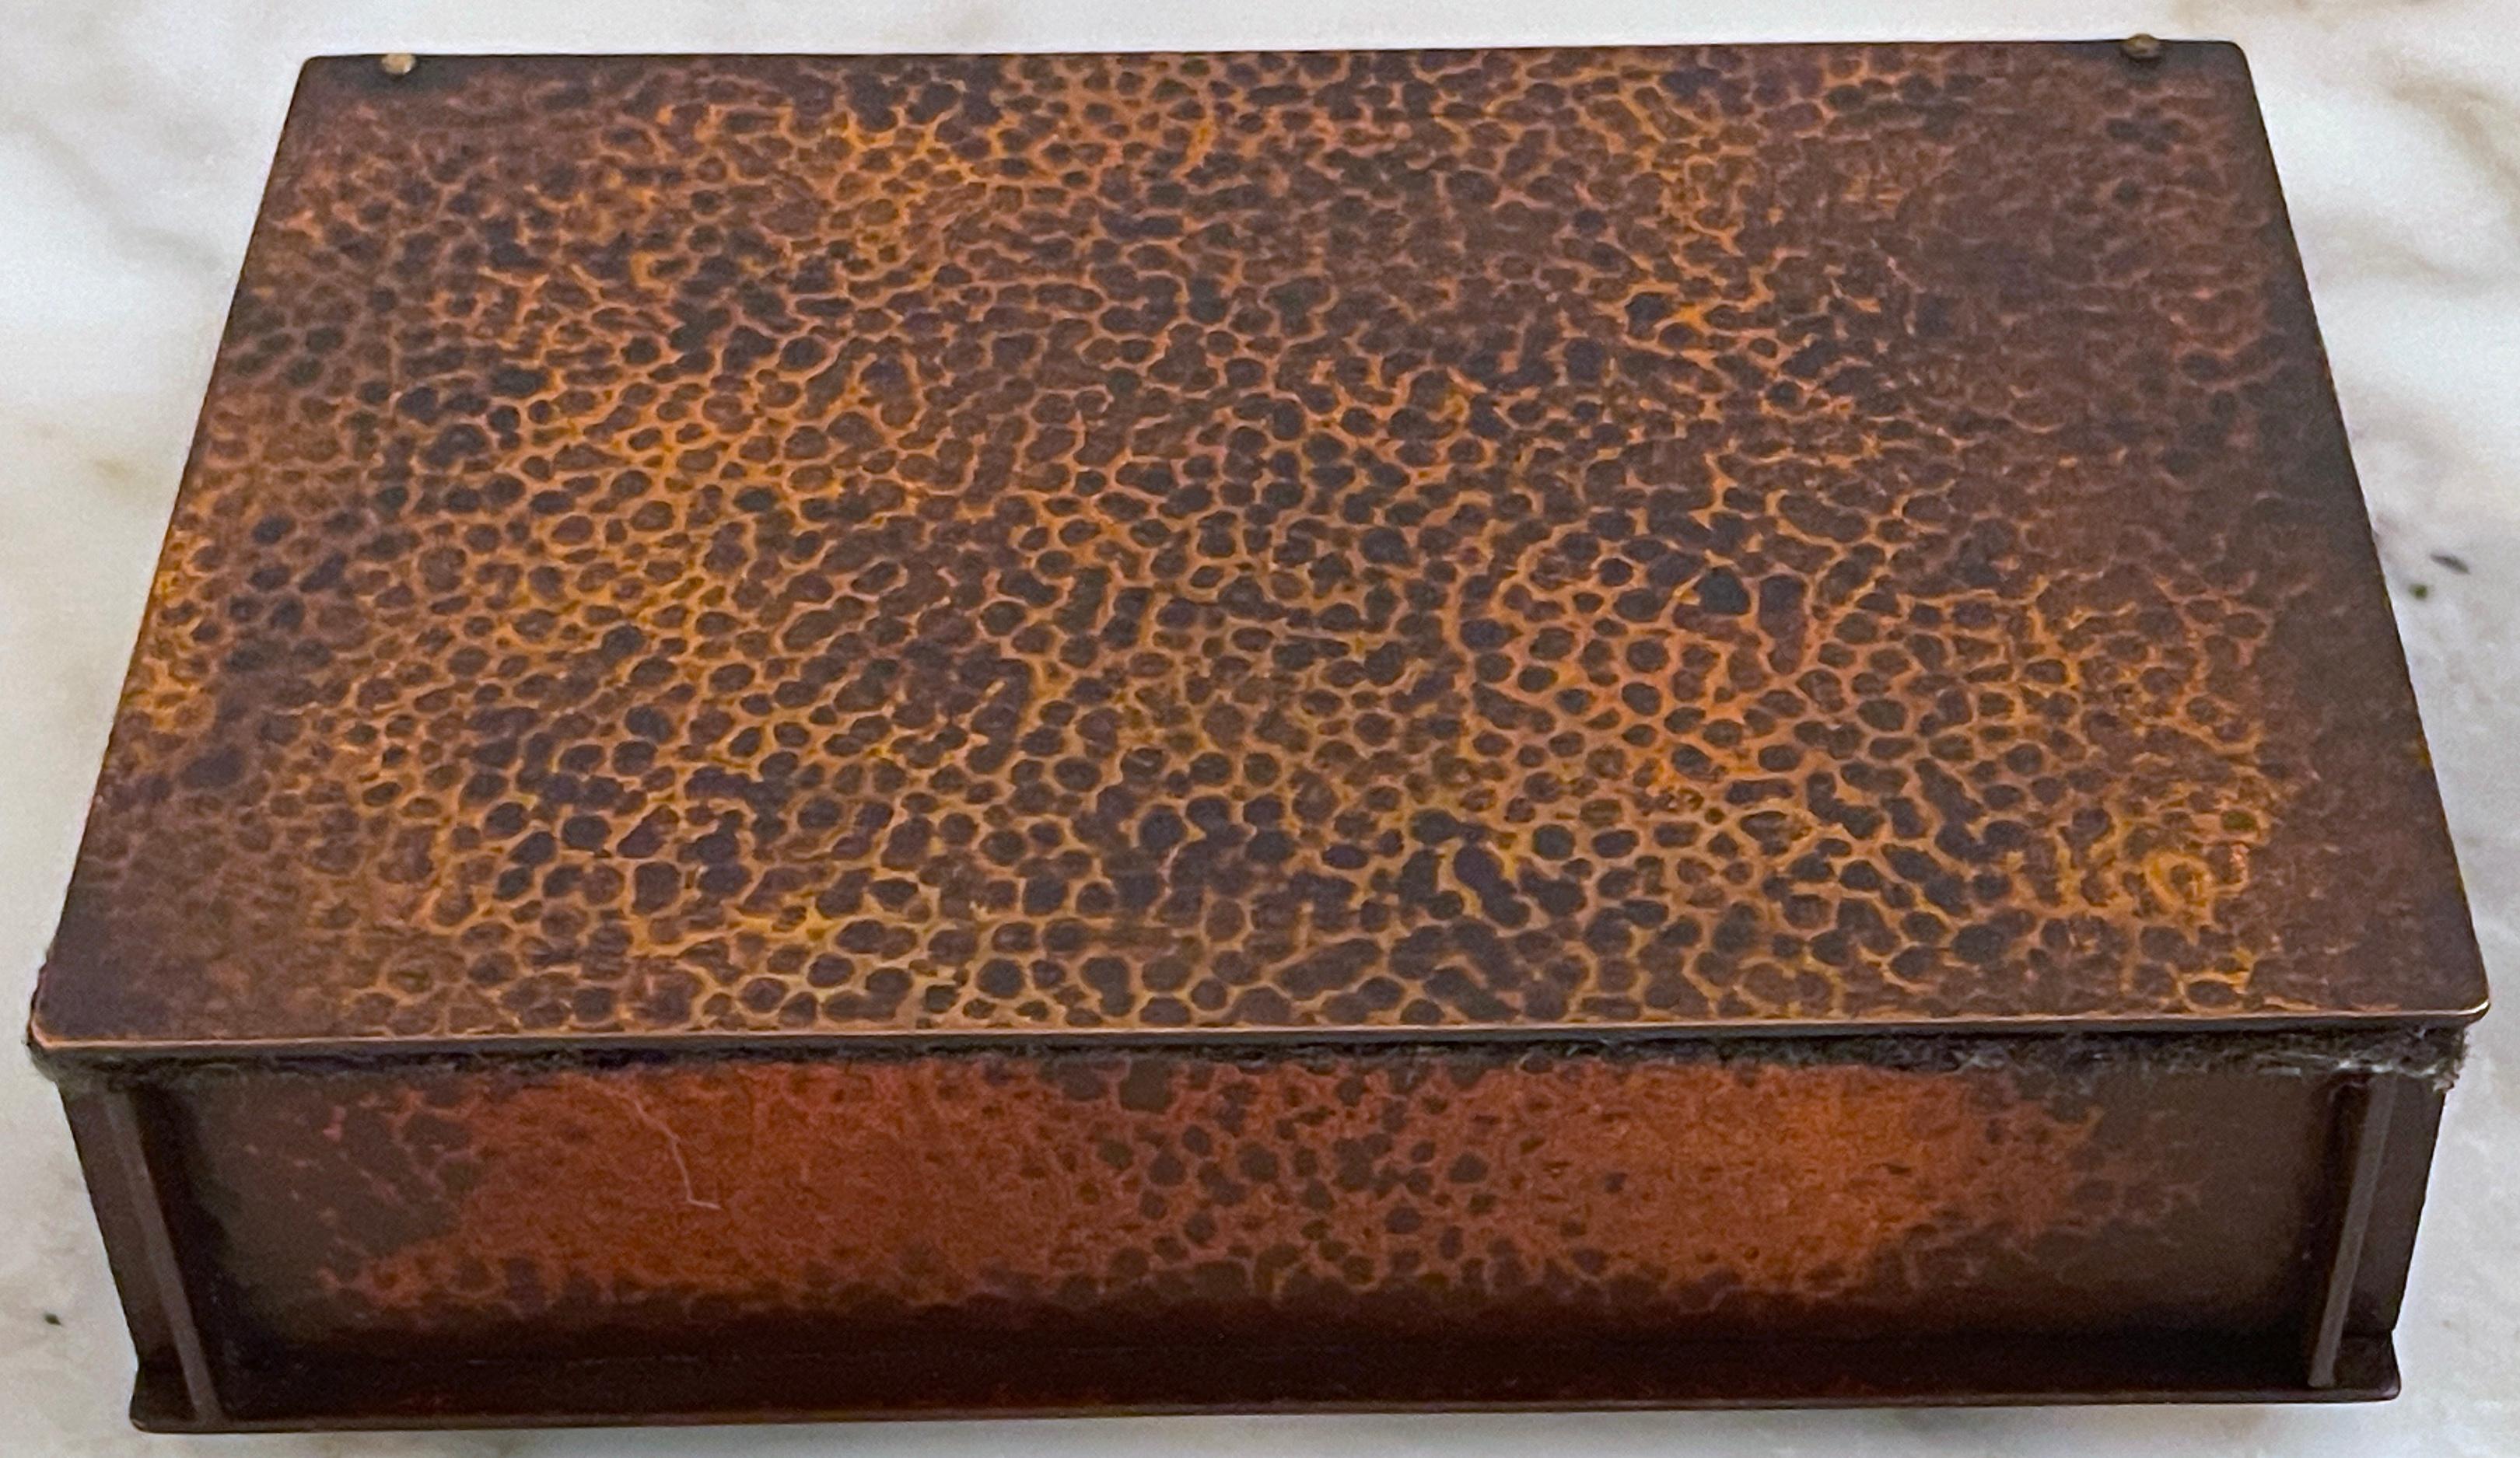 Roycroft Arts & Crafts Copper Table Box, aus dem Roycroft Inn in East Aurora, New York 
USA, um 1905
Bären 'The Roycroft Inn at East Aurora, New York' Label
Gestempelt mit Roycroft Doppelbalkenkreuz und Kreis mit dem Buchstaben 